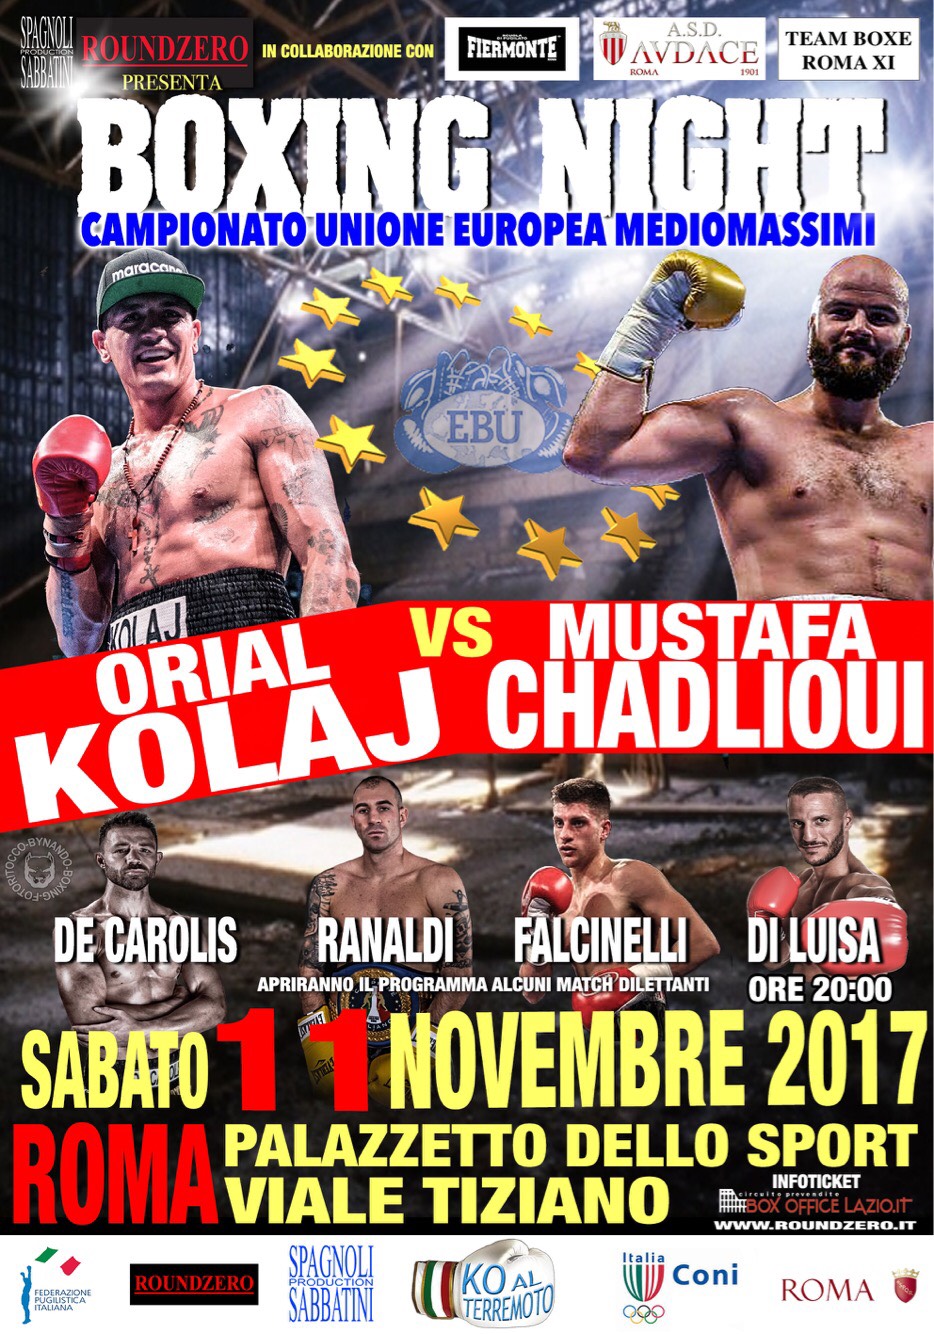 4 Mesi di Grande Boxe firmati RoundZero: Si pate l'11 Novembre con il Titolo UE Mediomassimi tra Kolaj e Chadlioui